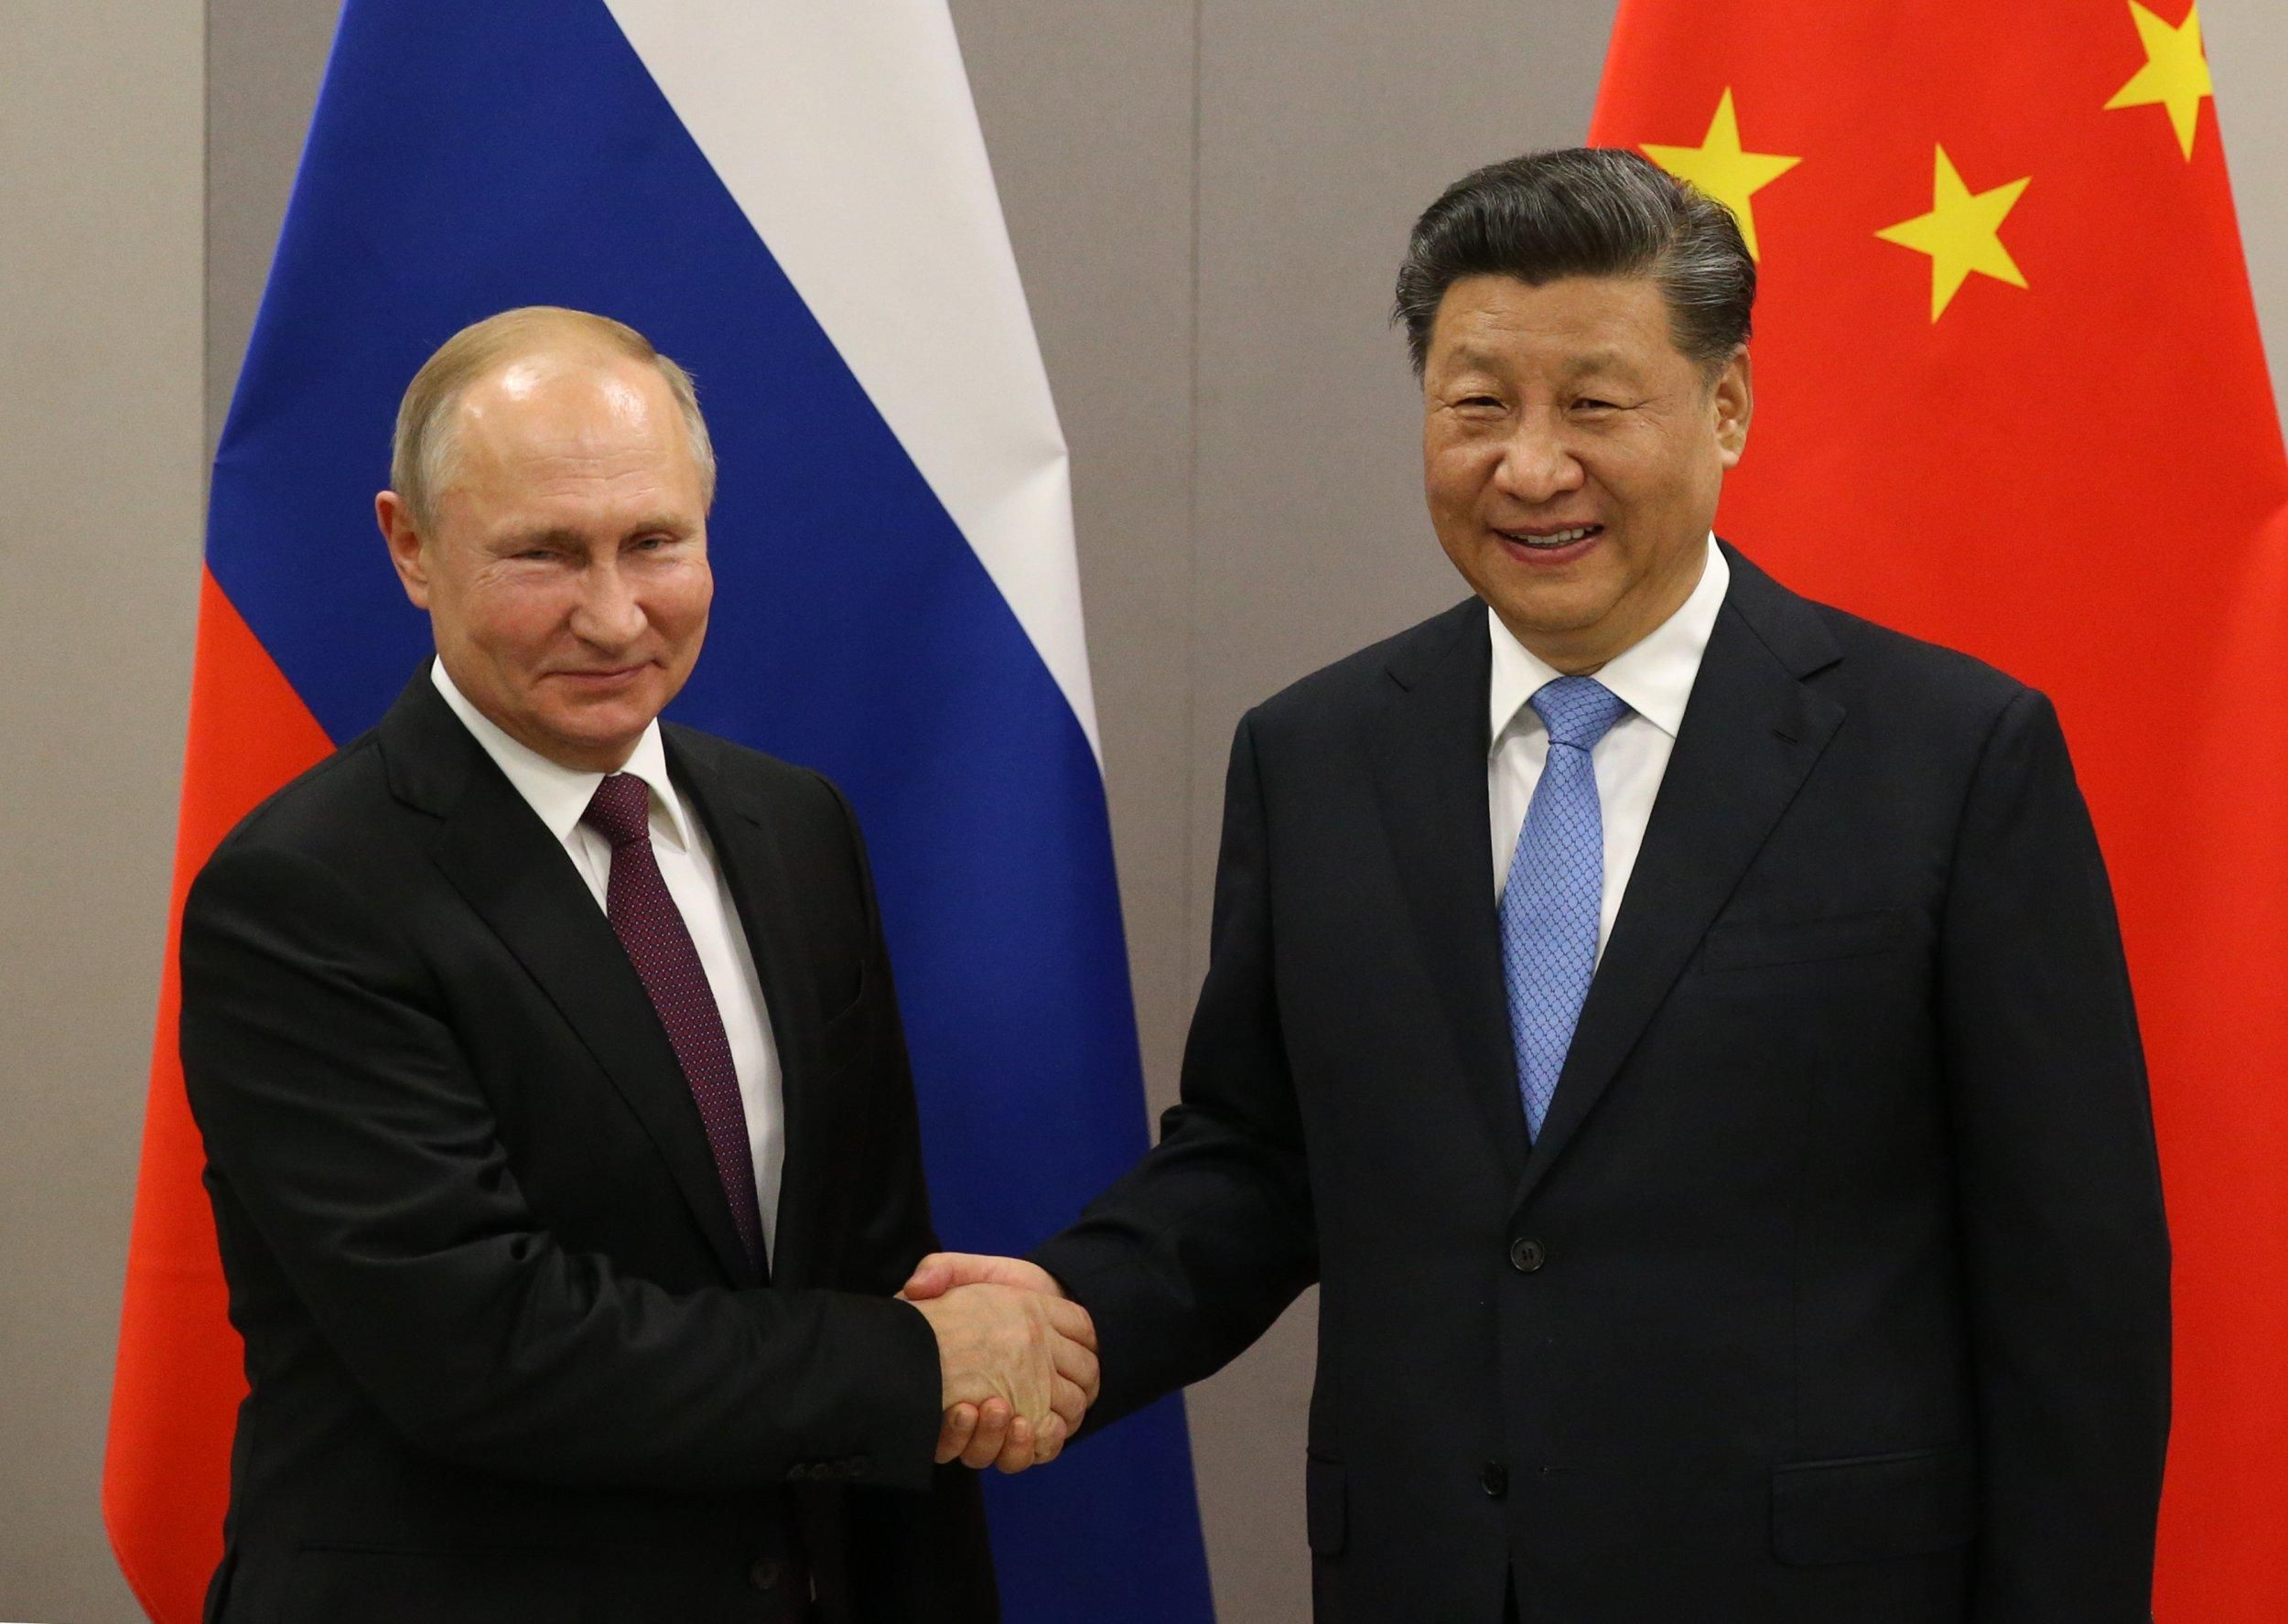 России Китай нужен больше, чем Китаю – Россия, – Ходжес о том, даст ли КНР оружие россиянам